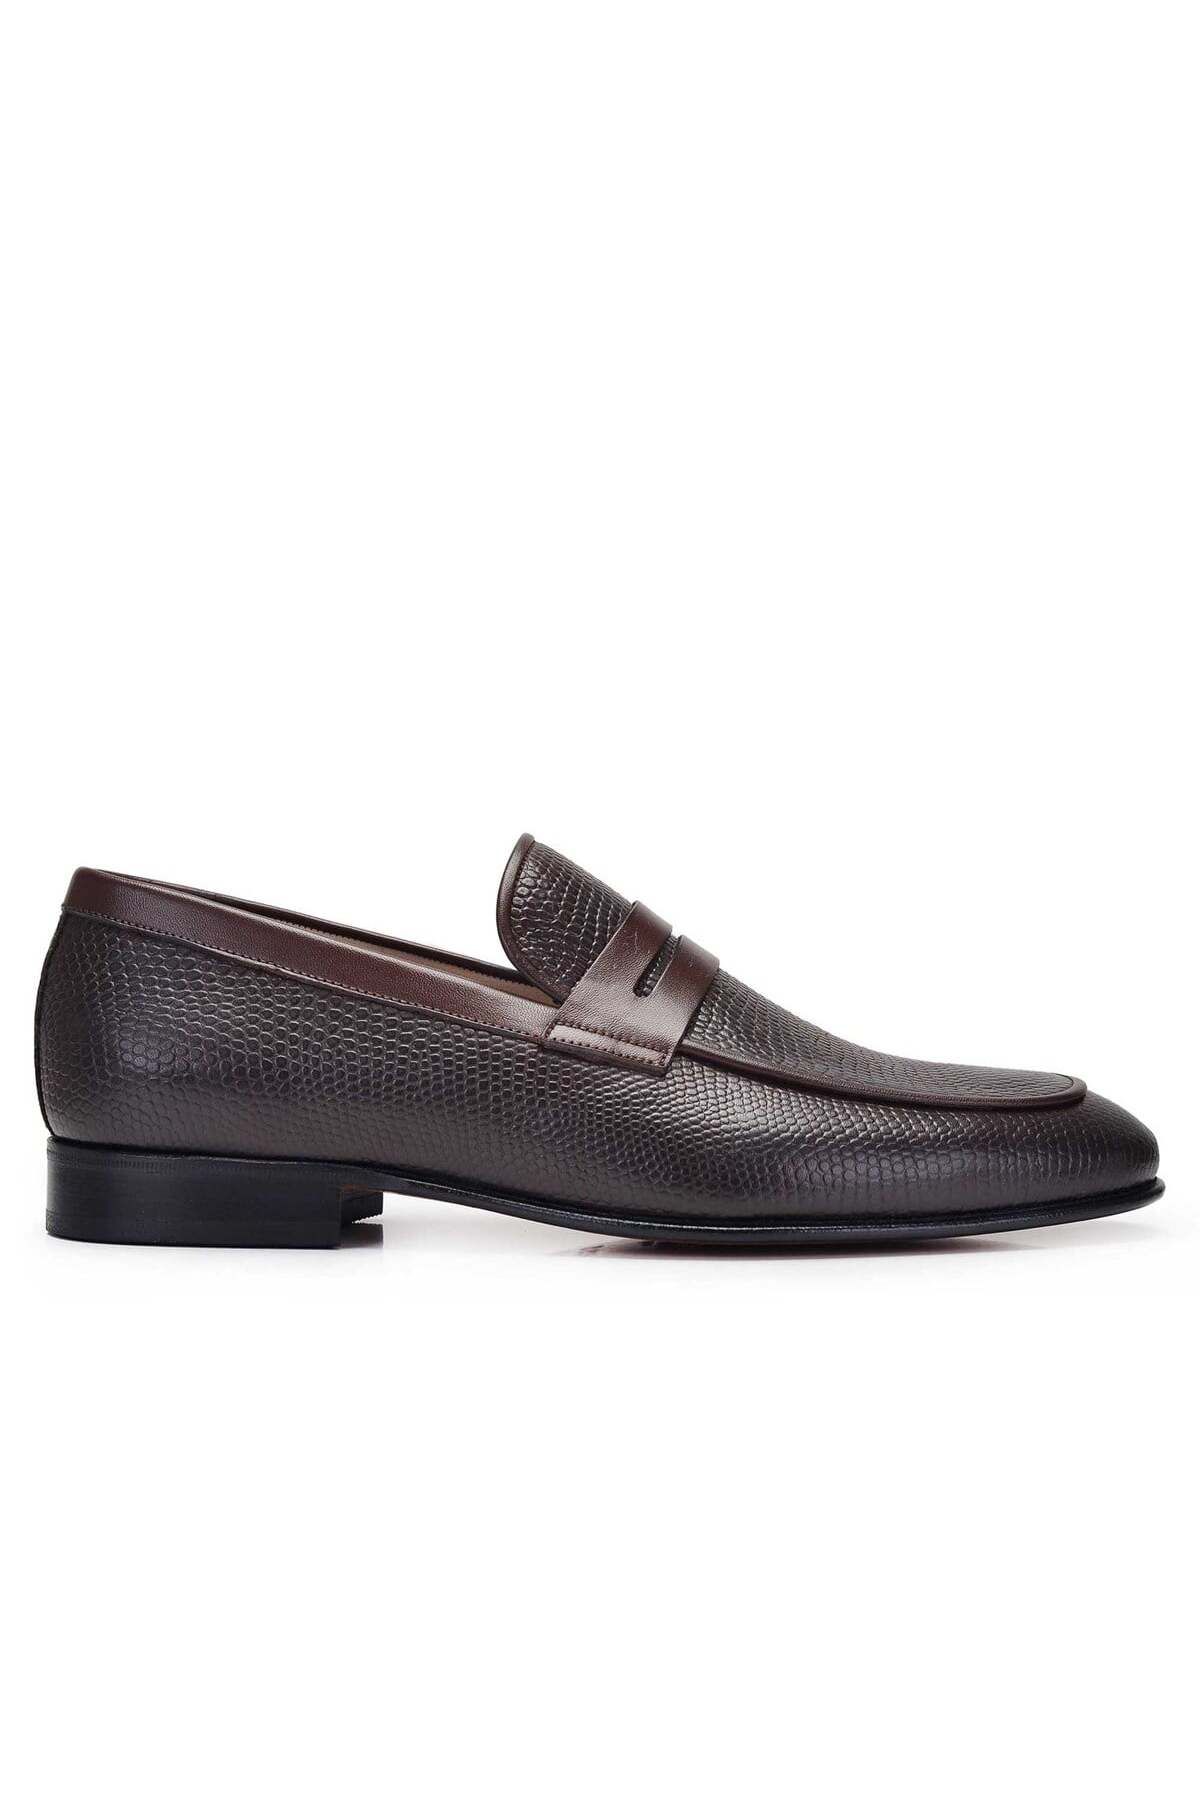 Nevzat Onay Kahverengi Klasik Loafer Kösele Erkek Ayakkabı -11656-